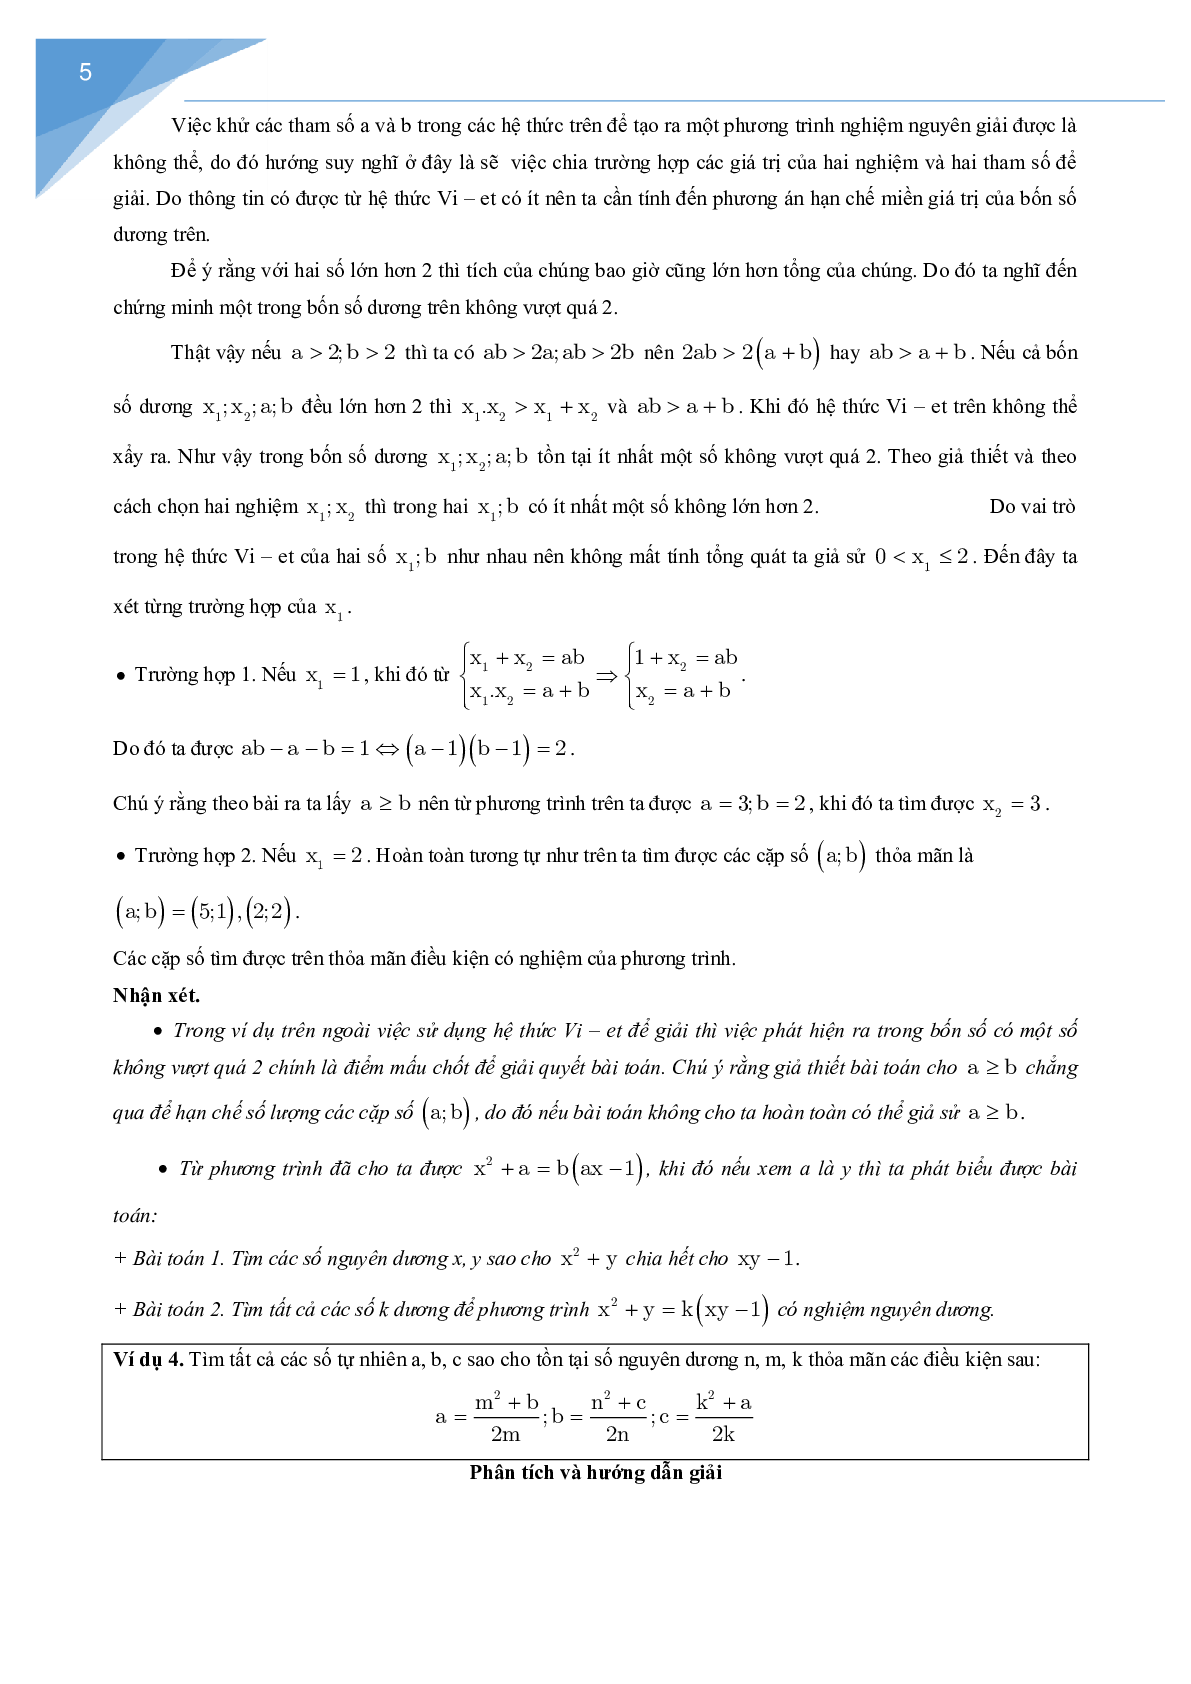 Vận dụng định lý Vi-et giải một số bài toán số học (trang 5)